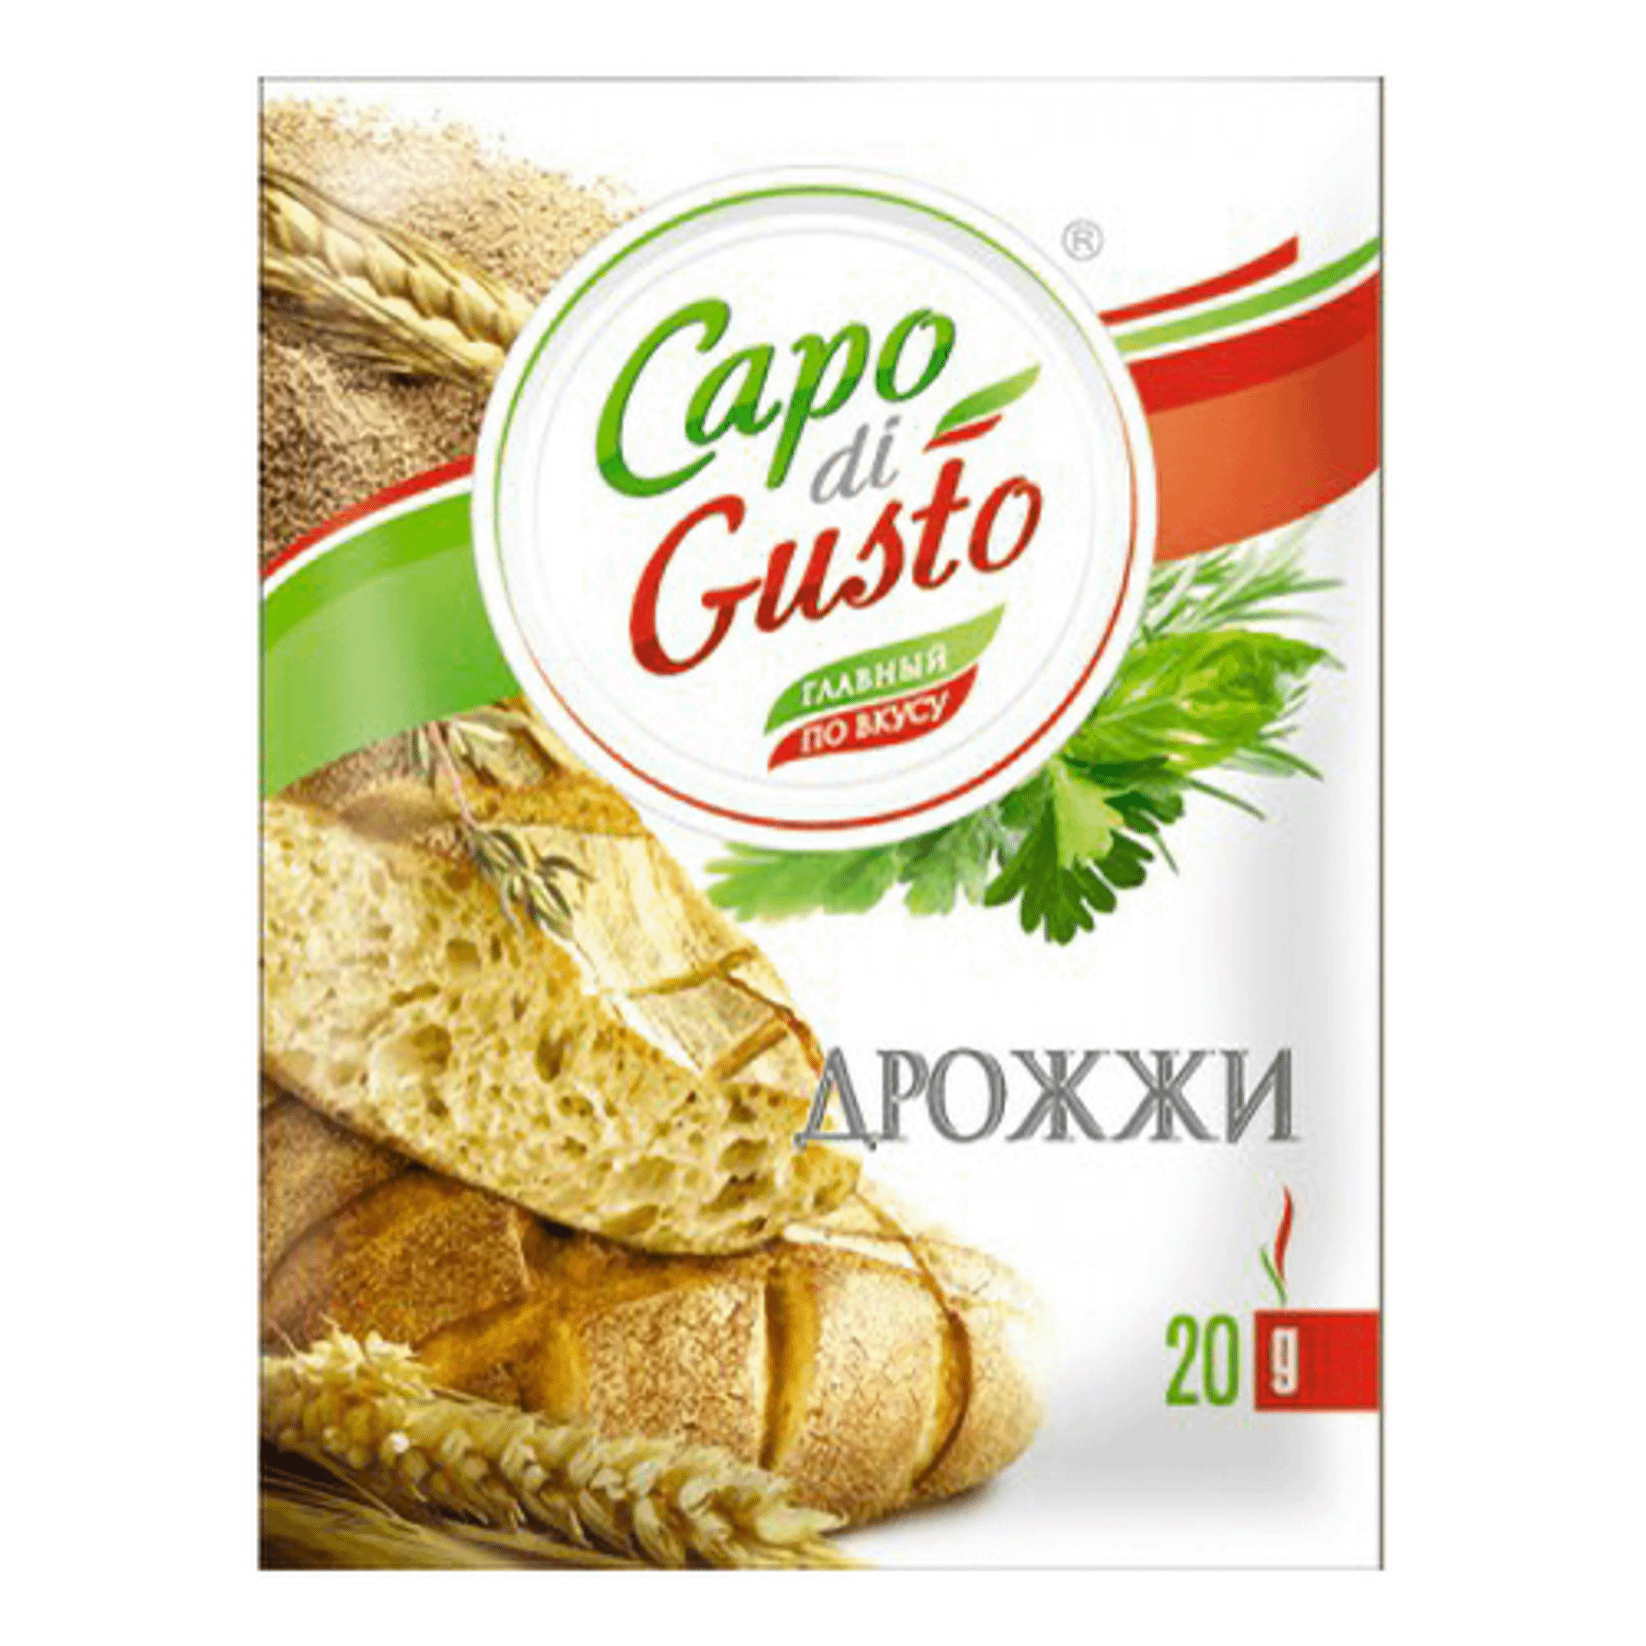 Дрожжи Capo di Gusto быстрорастворимые 20 г дрожжи саф левюр хлебопекарные сухие активные 100 гр